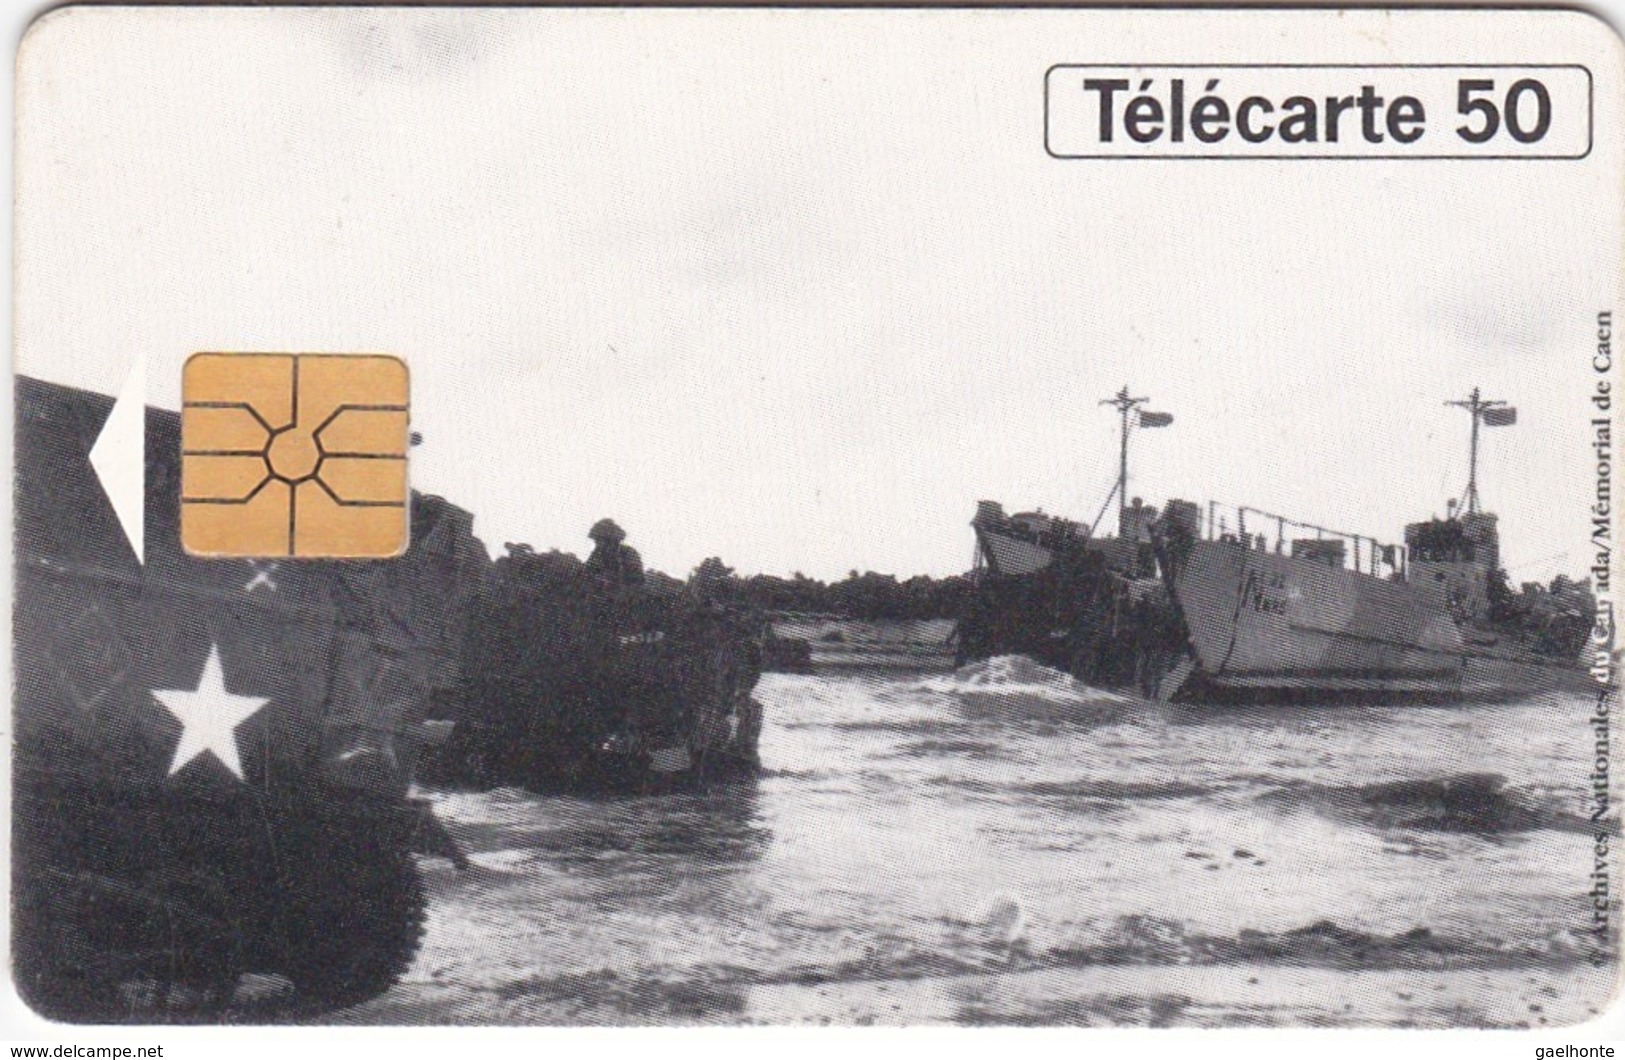 TC120 TÉLÉCARTE 50 UNITÉS - 1944-1994 - 50ème ANNIVERSAIRE DES DEBARQUEMENTS... - BERNIERES SUR MER 06 JUIN 1944 - Armee